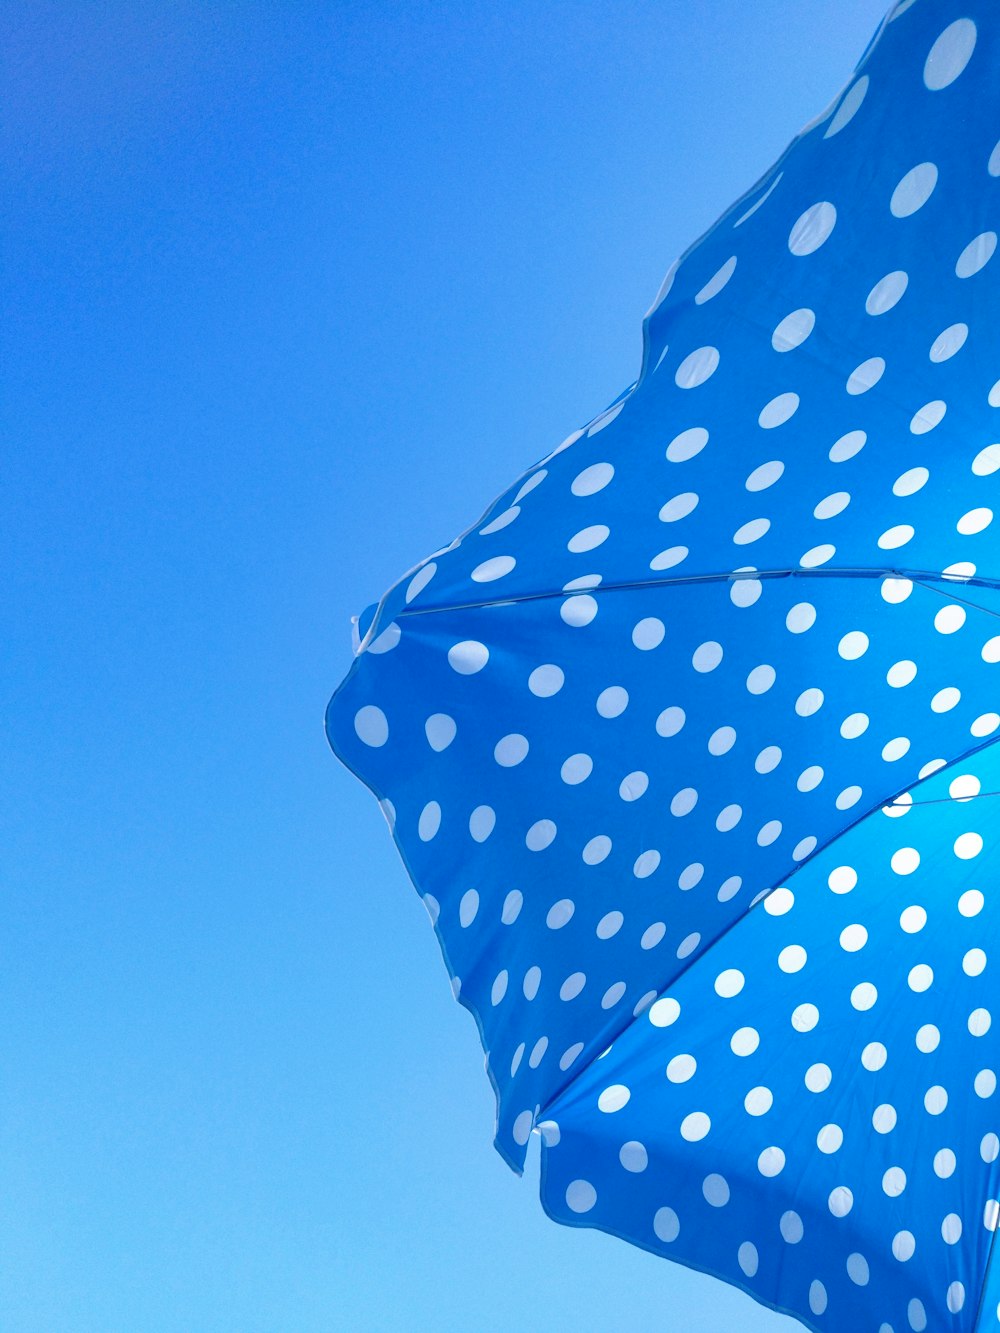 青と白の水玉模様の傘